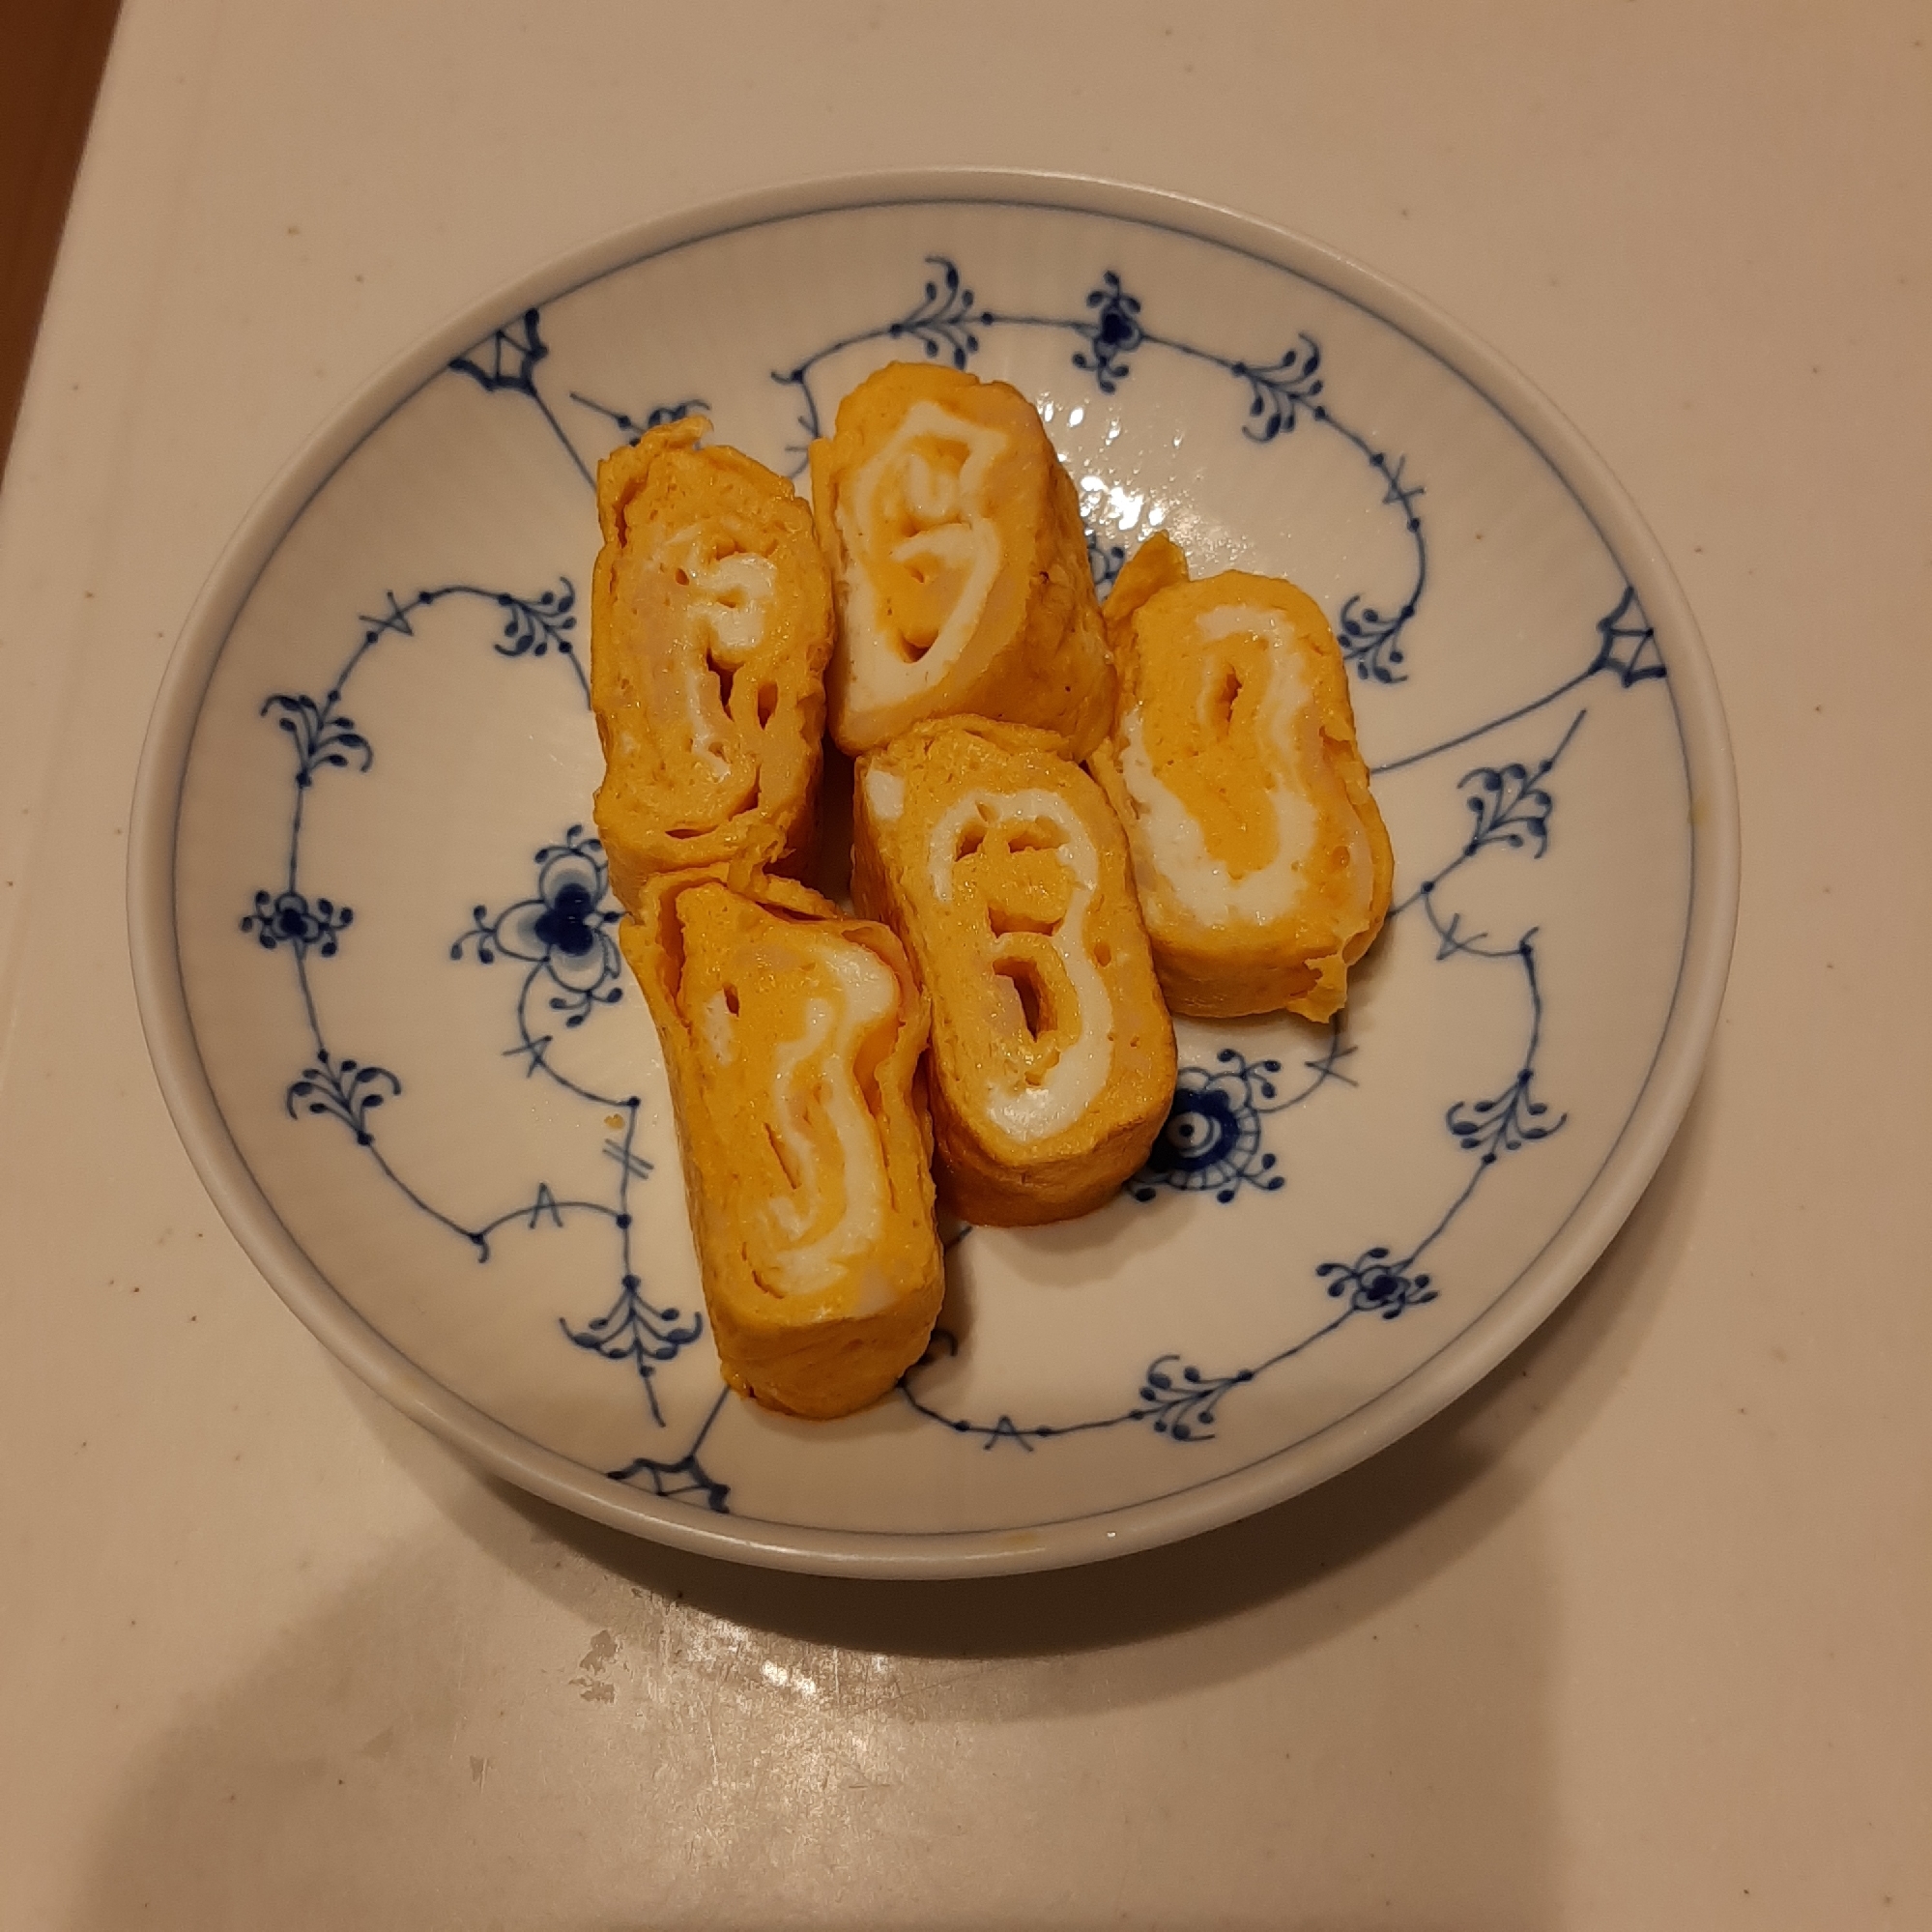 カニかま入りの卵焼き(*^^*)